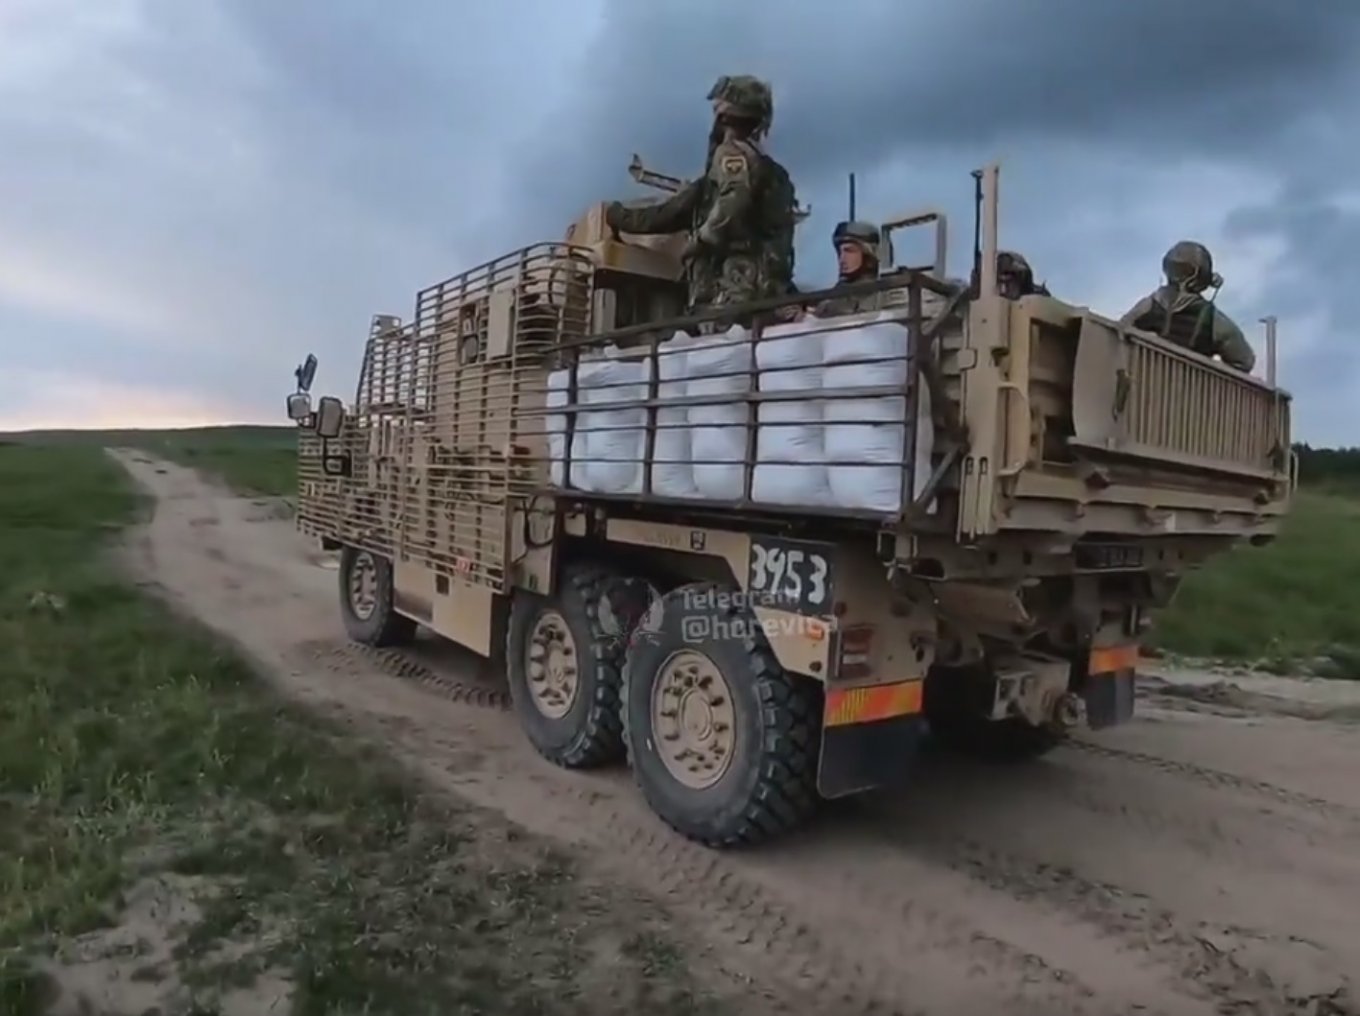 British Patrol Vehicles Wolfhound fixed on exercises in Ukraine